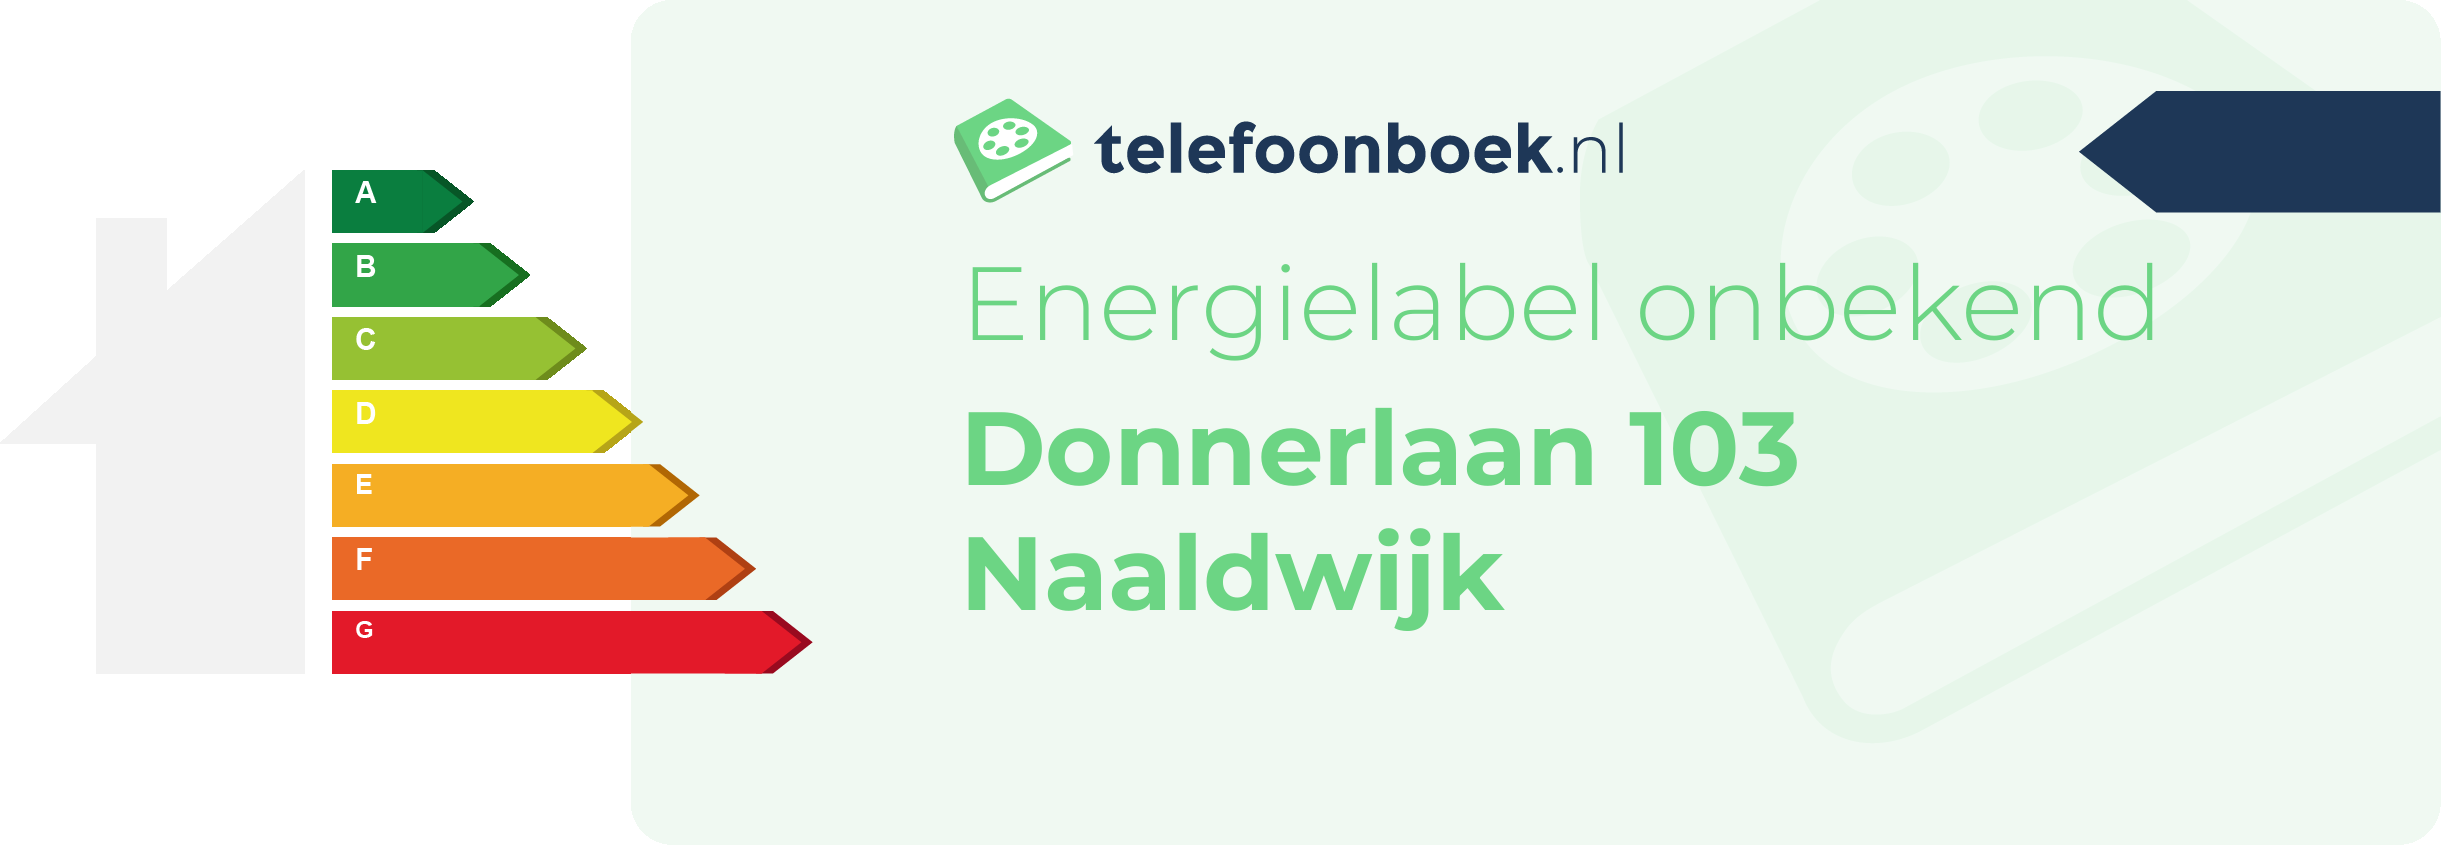 Energielabel Donnerlaan 103 Naaldwijk